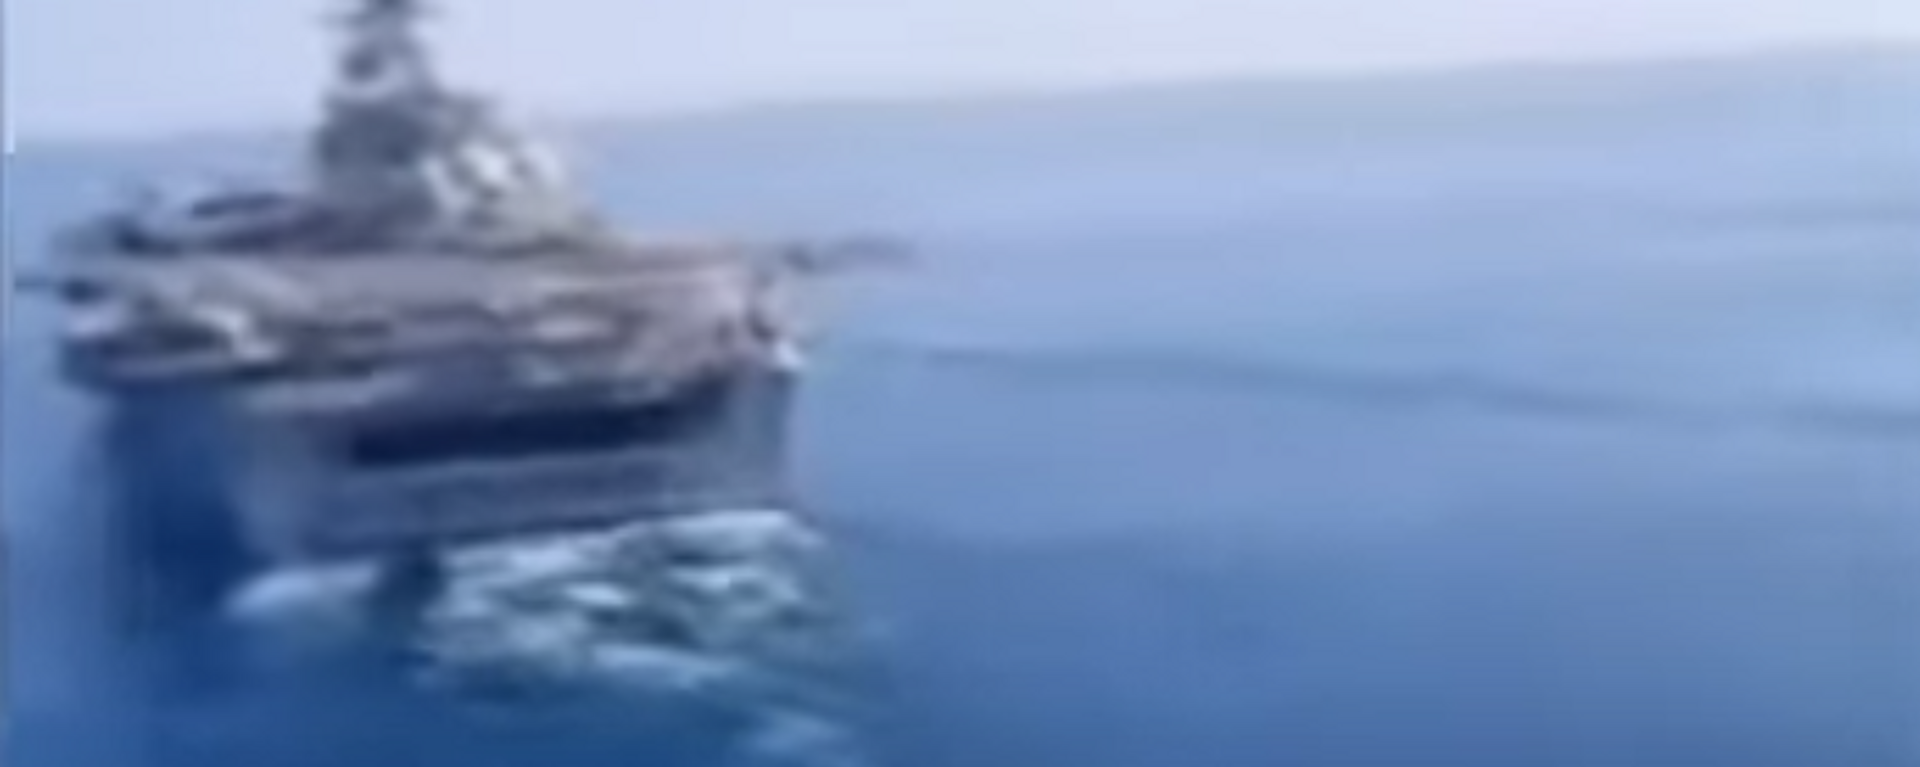 Video: un helicóptero iraní sobrevuela un portaviones estadounidense en las aguas del golfo Pérsico - Sputnik Mundo, 1920, 14.11.2021